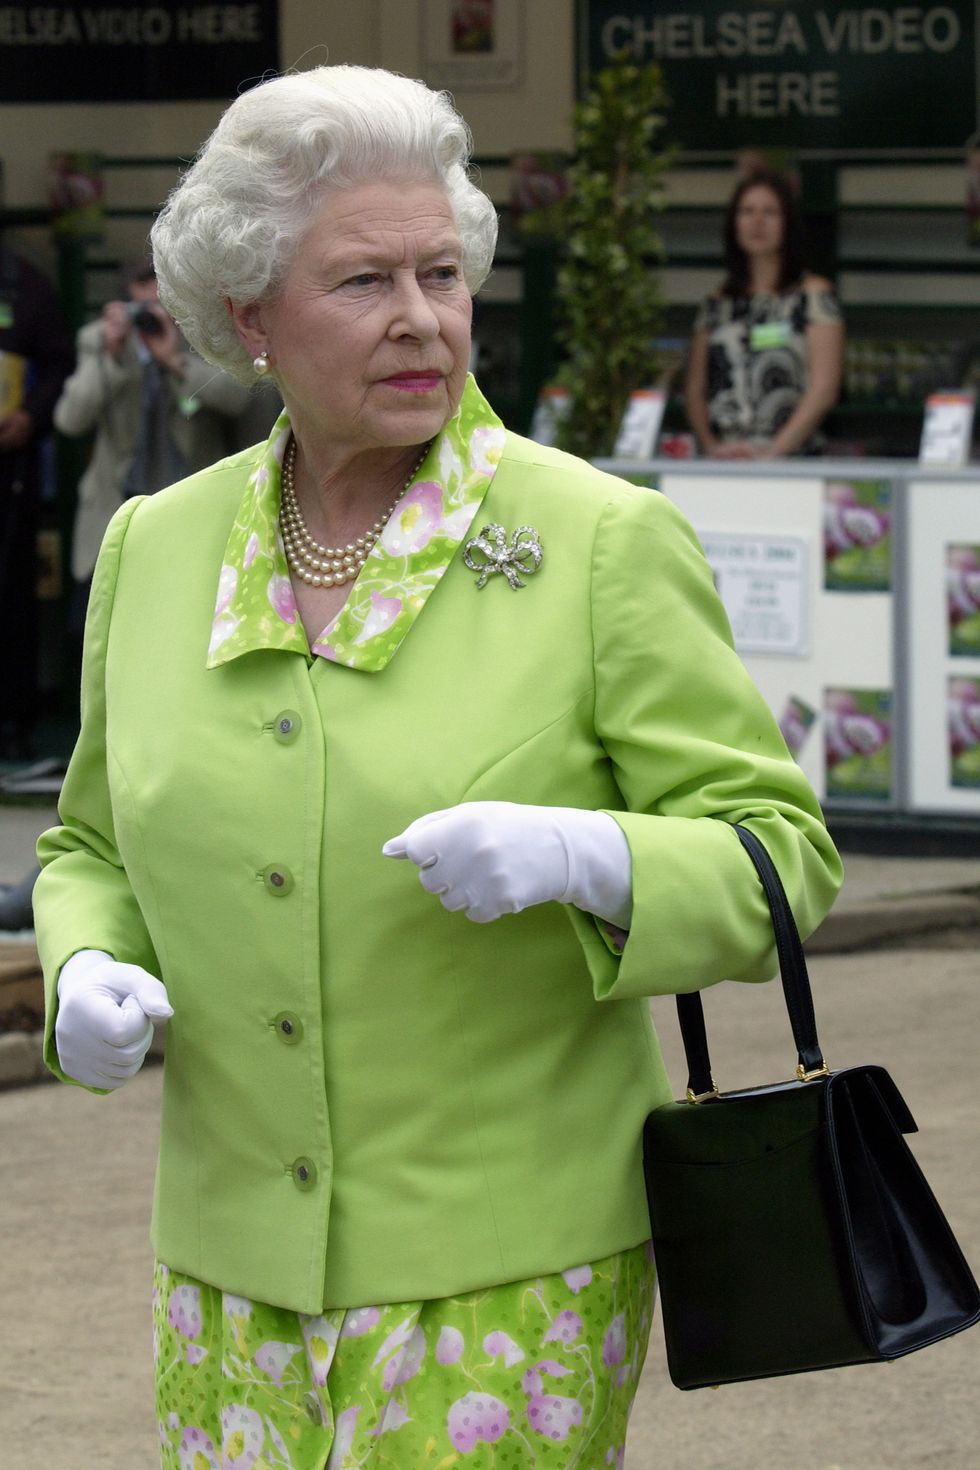 მწვანე ფერი, არამხოლოდ სეზონის მთავარი ტრენდი, არამედ სამეფო ოჯახის ფავორიტია